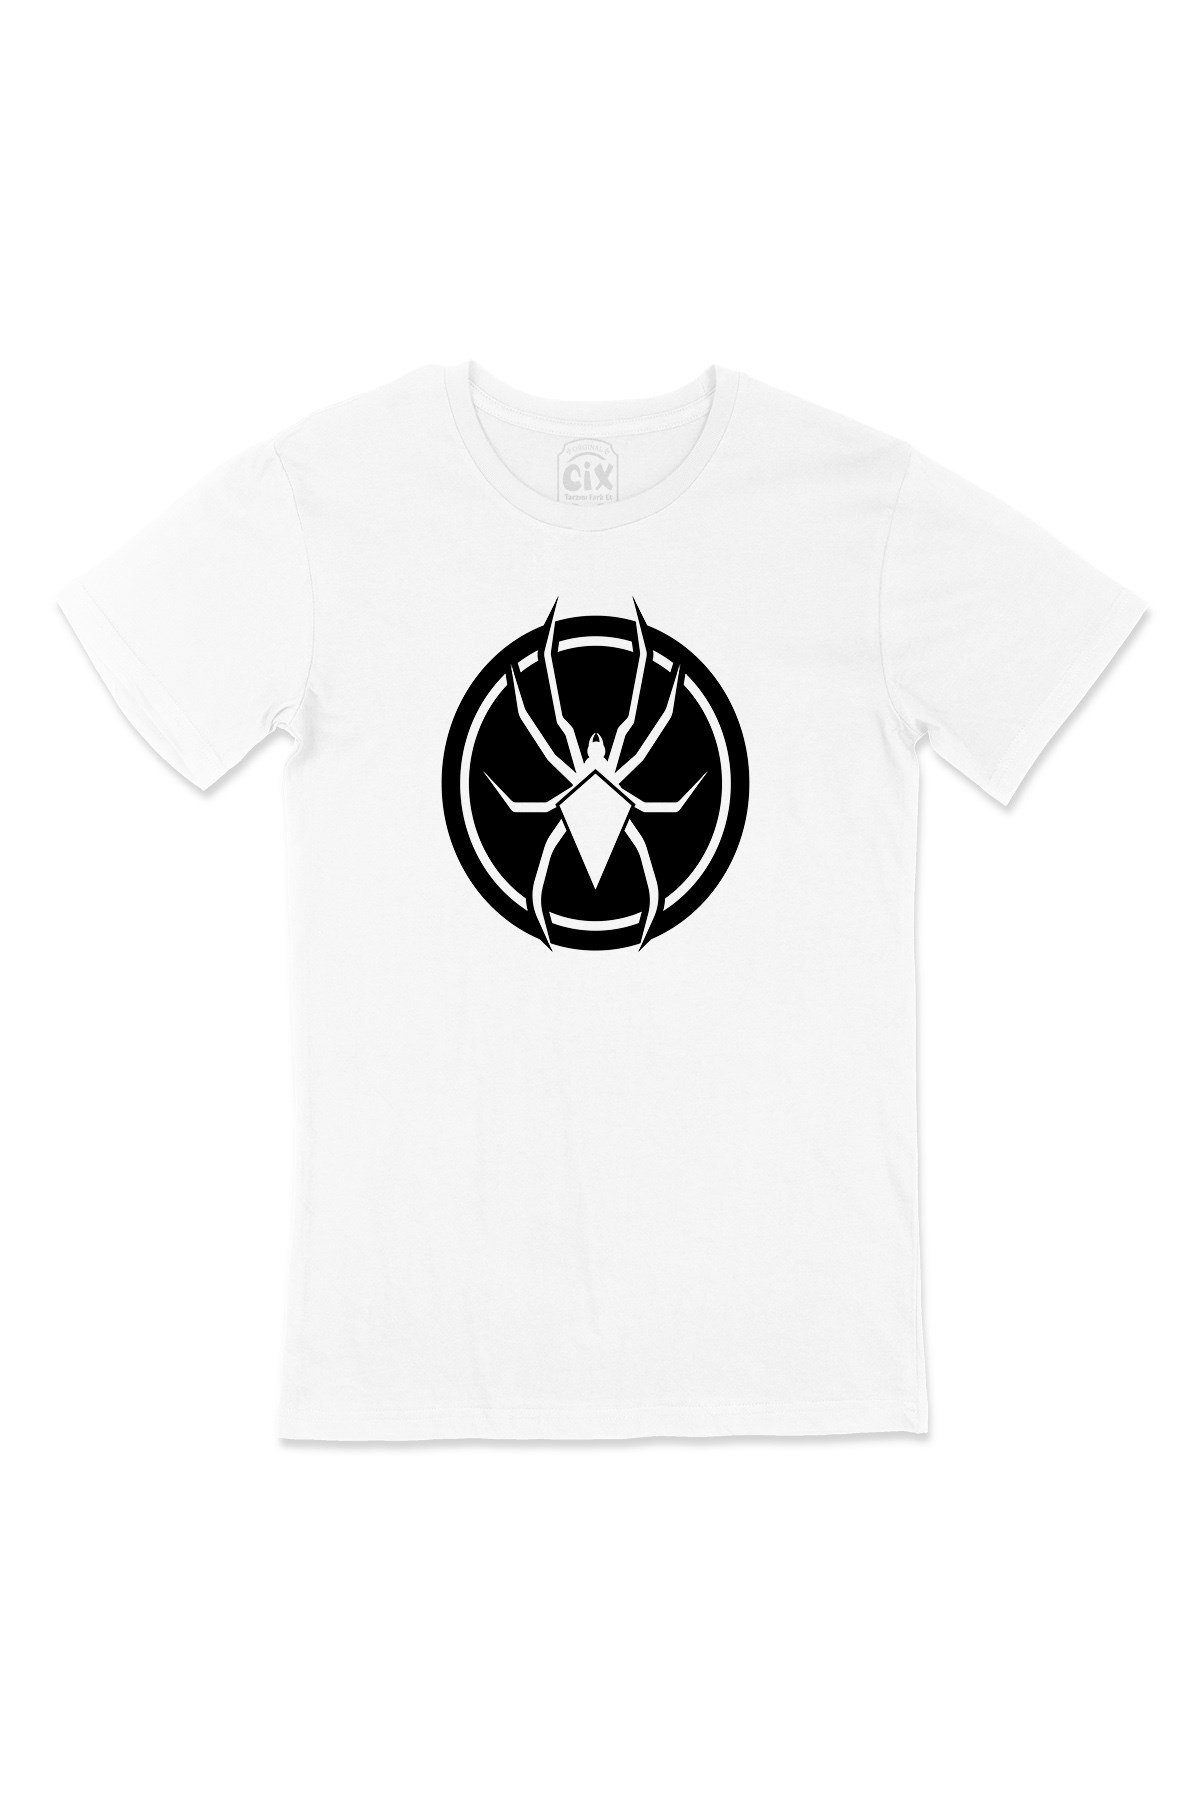 Cix Black Widow Örümcekli Tişört - Ücretsiz Kargo